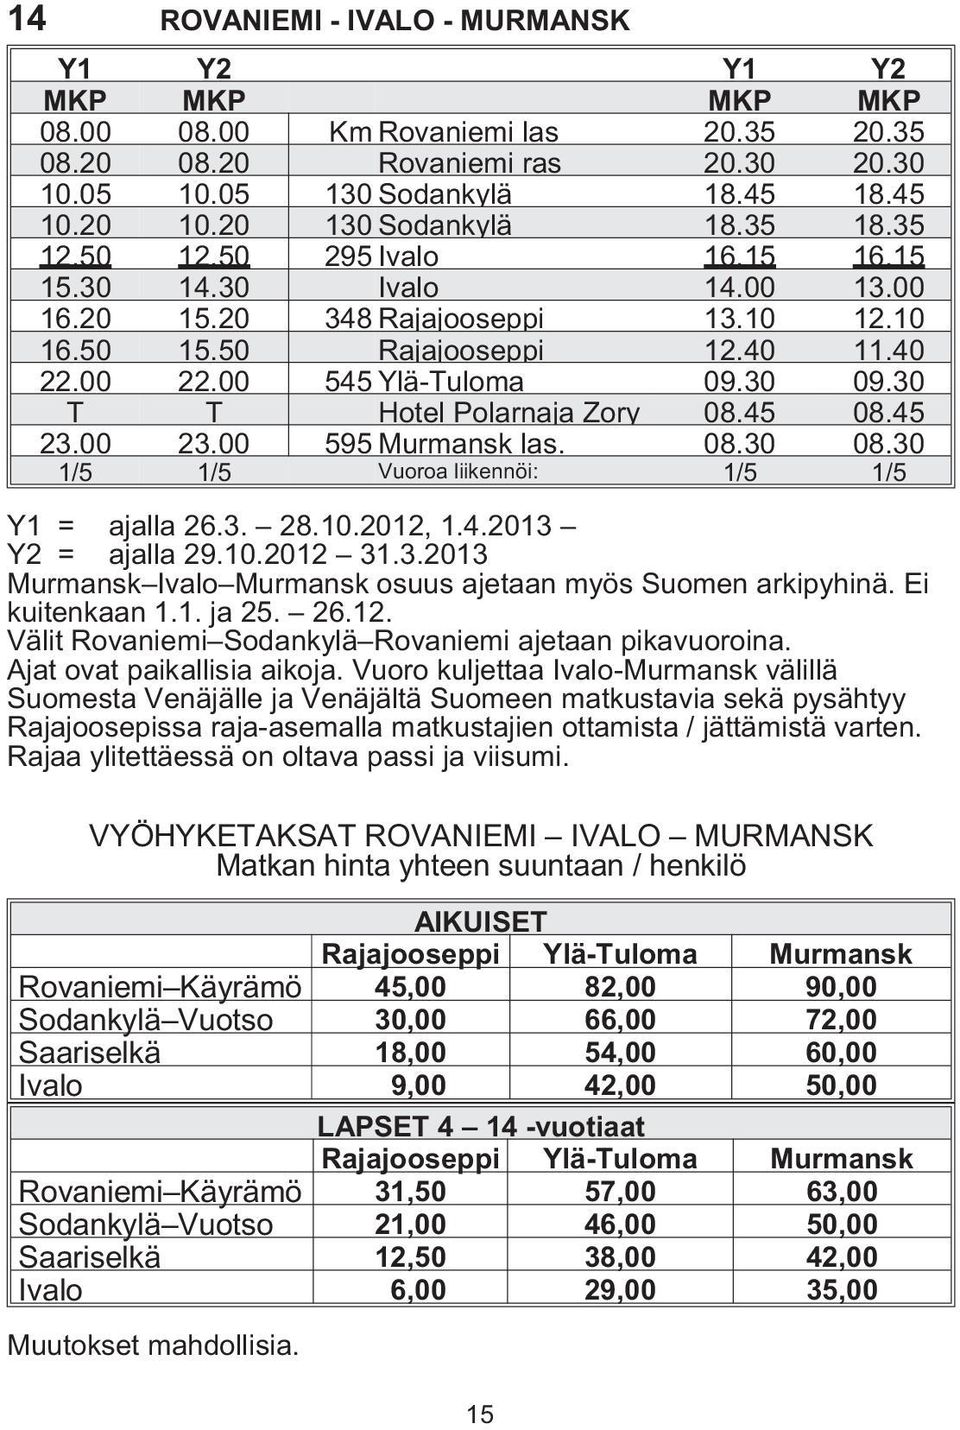 00 545 Ylä-Tuloma 09.30 09.30 T T Ho tel Polarnaja Zory 08.45 08.45 23.00 23.00 595 Murmansk las. 08.30 08.30 1/5 1/5 Vuoroa liikennöi: 1/5 1/5 Y1 = ajalla 26.3. 28.10.2012, 1.4.2013 Y2 = ajalla 29.